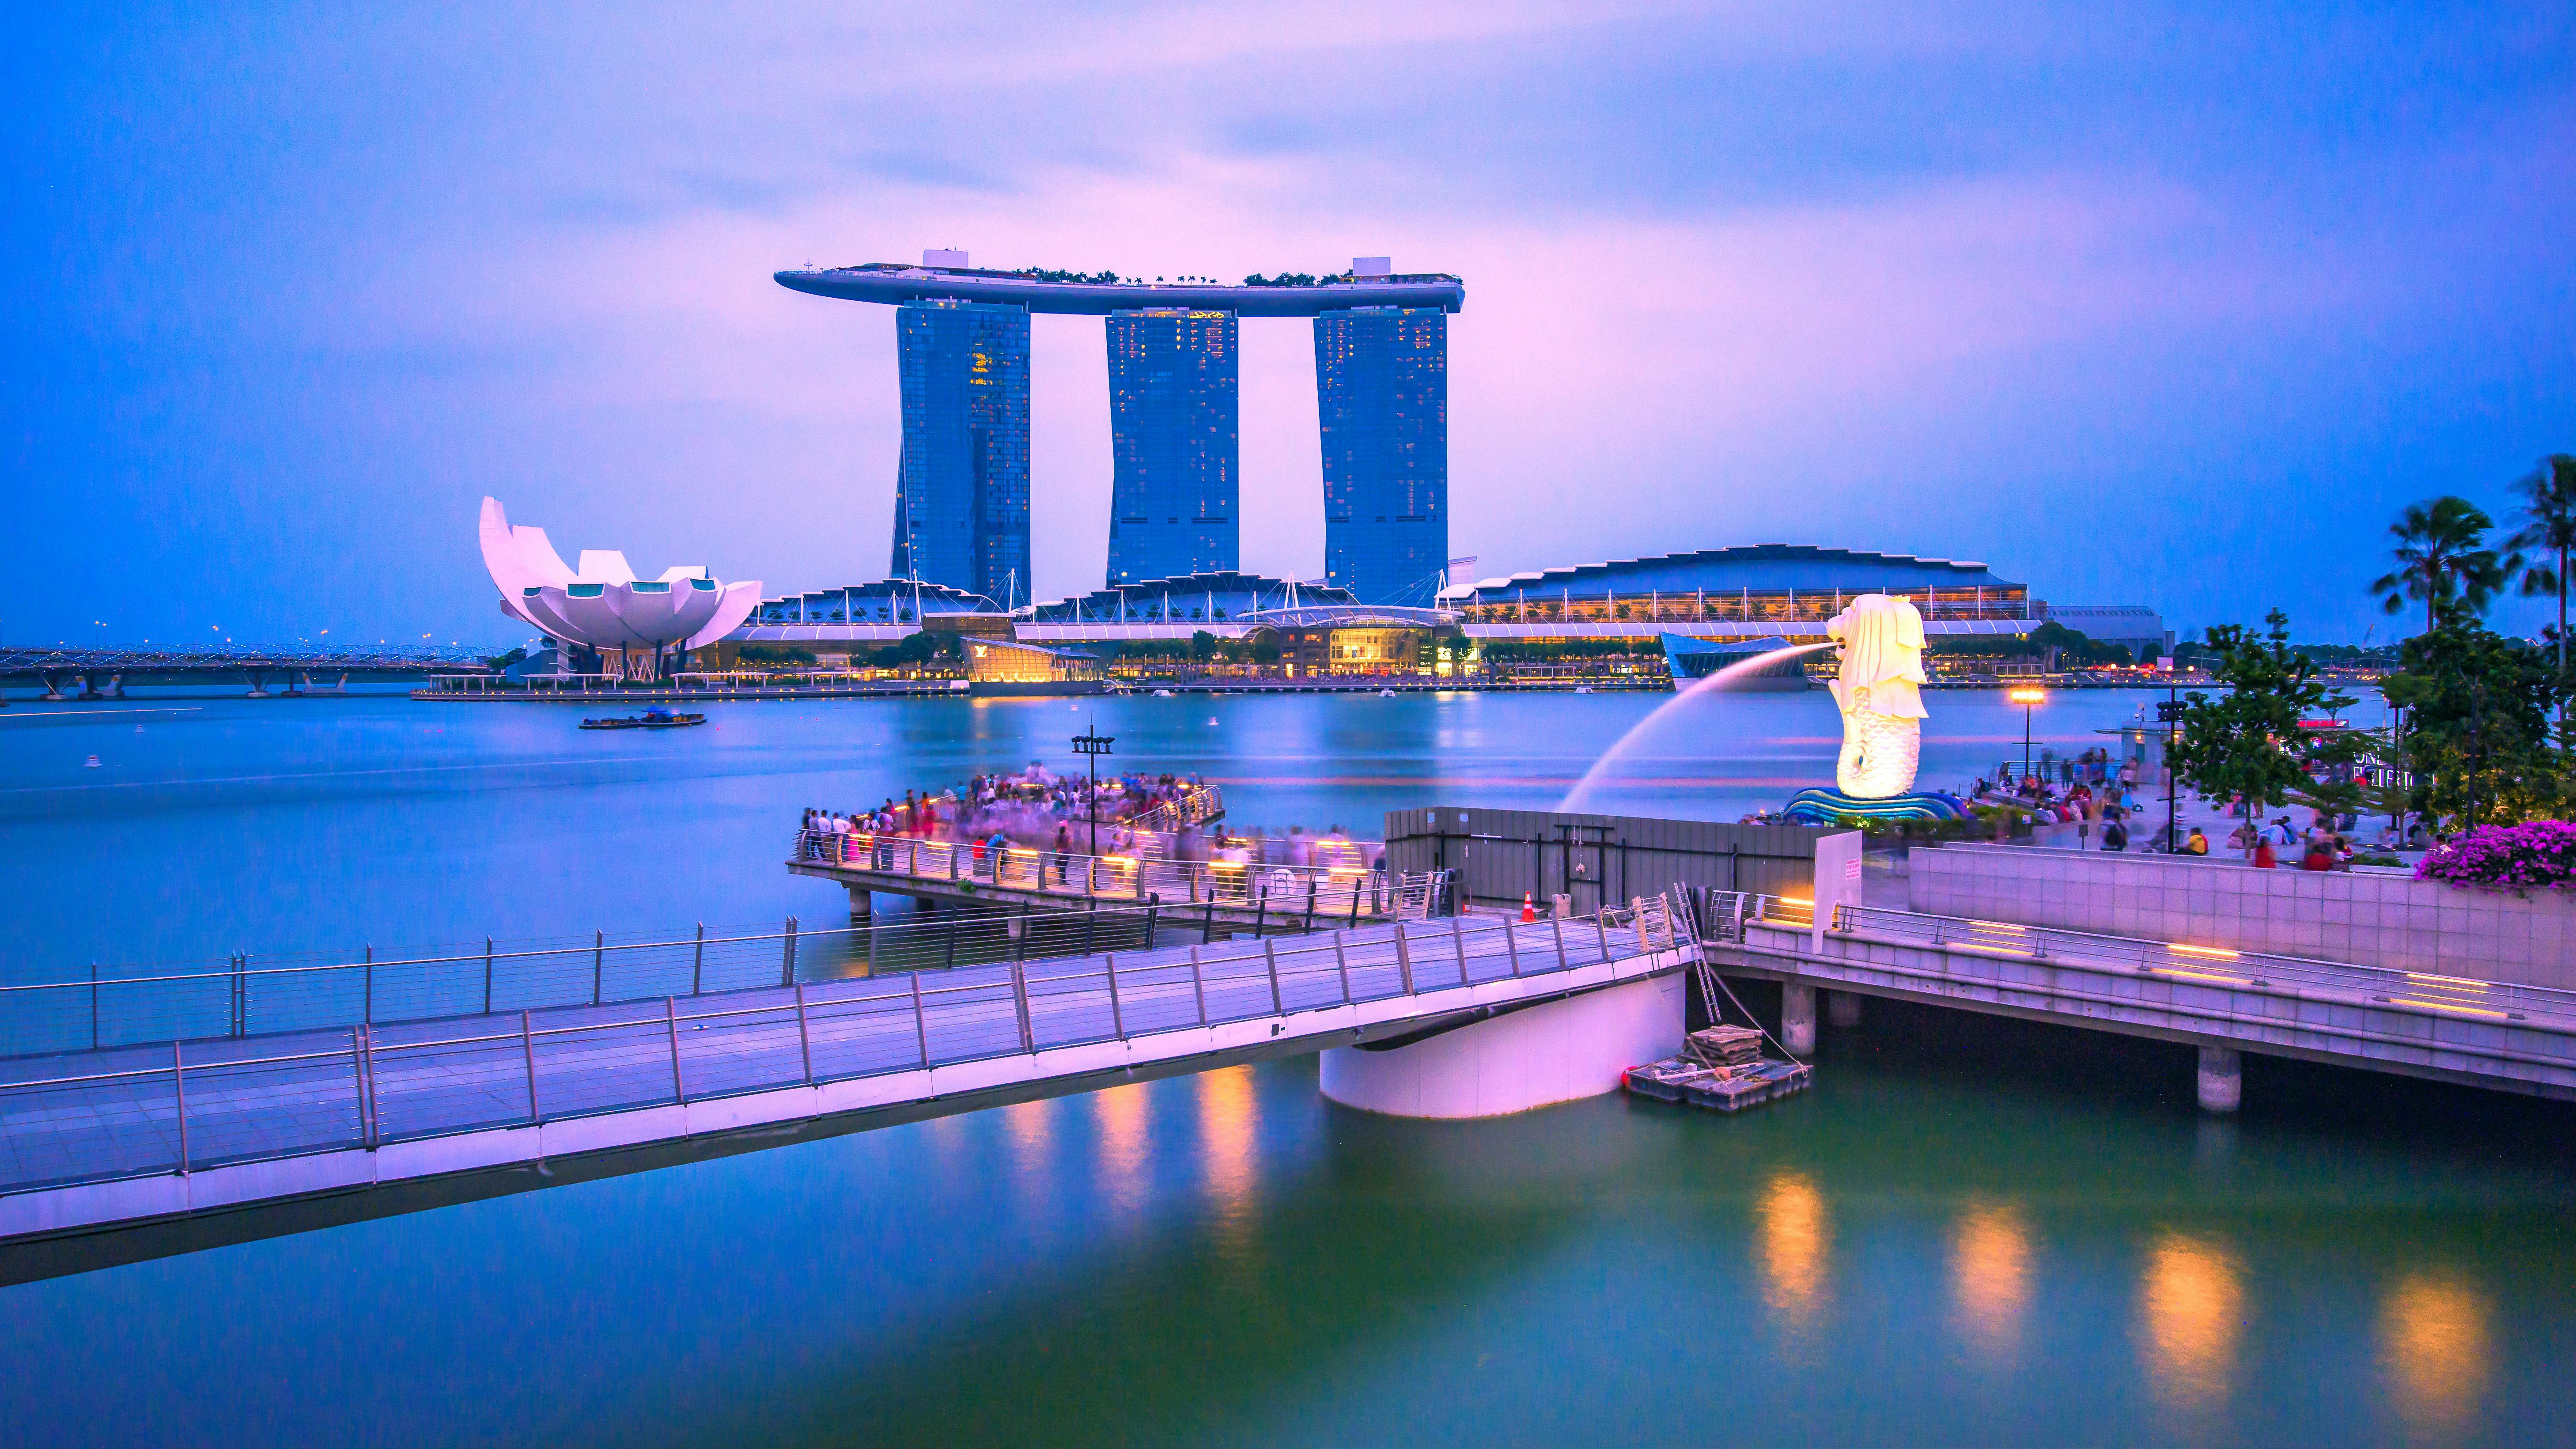 Lujoso crucero al atardecer en Singapur en catamarán